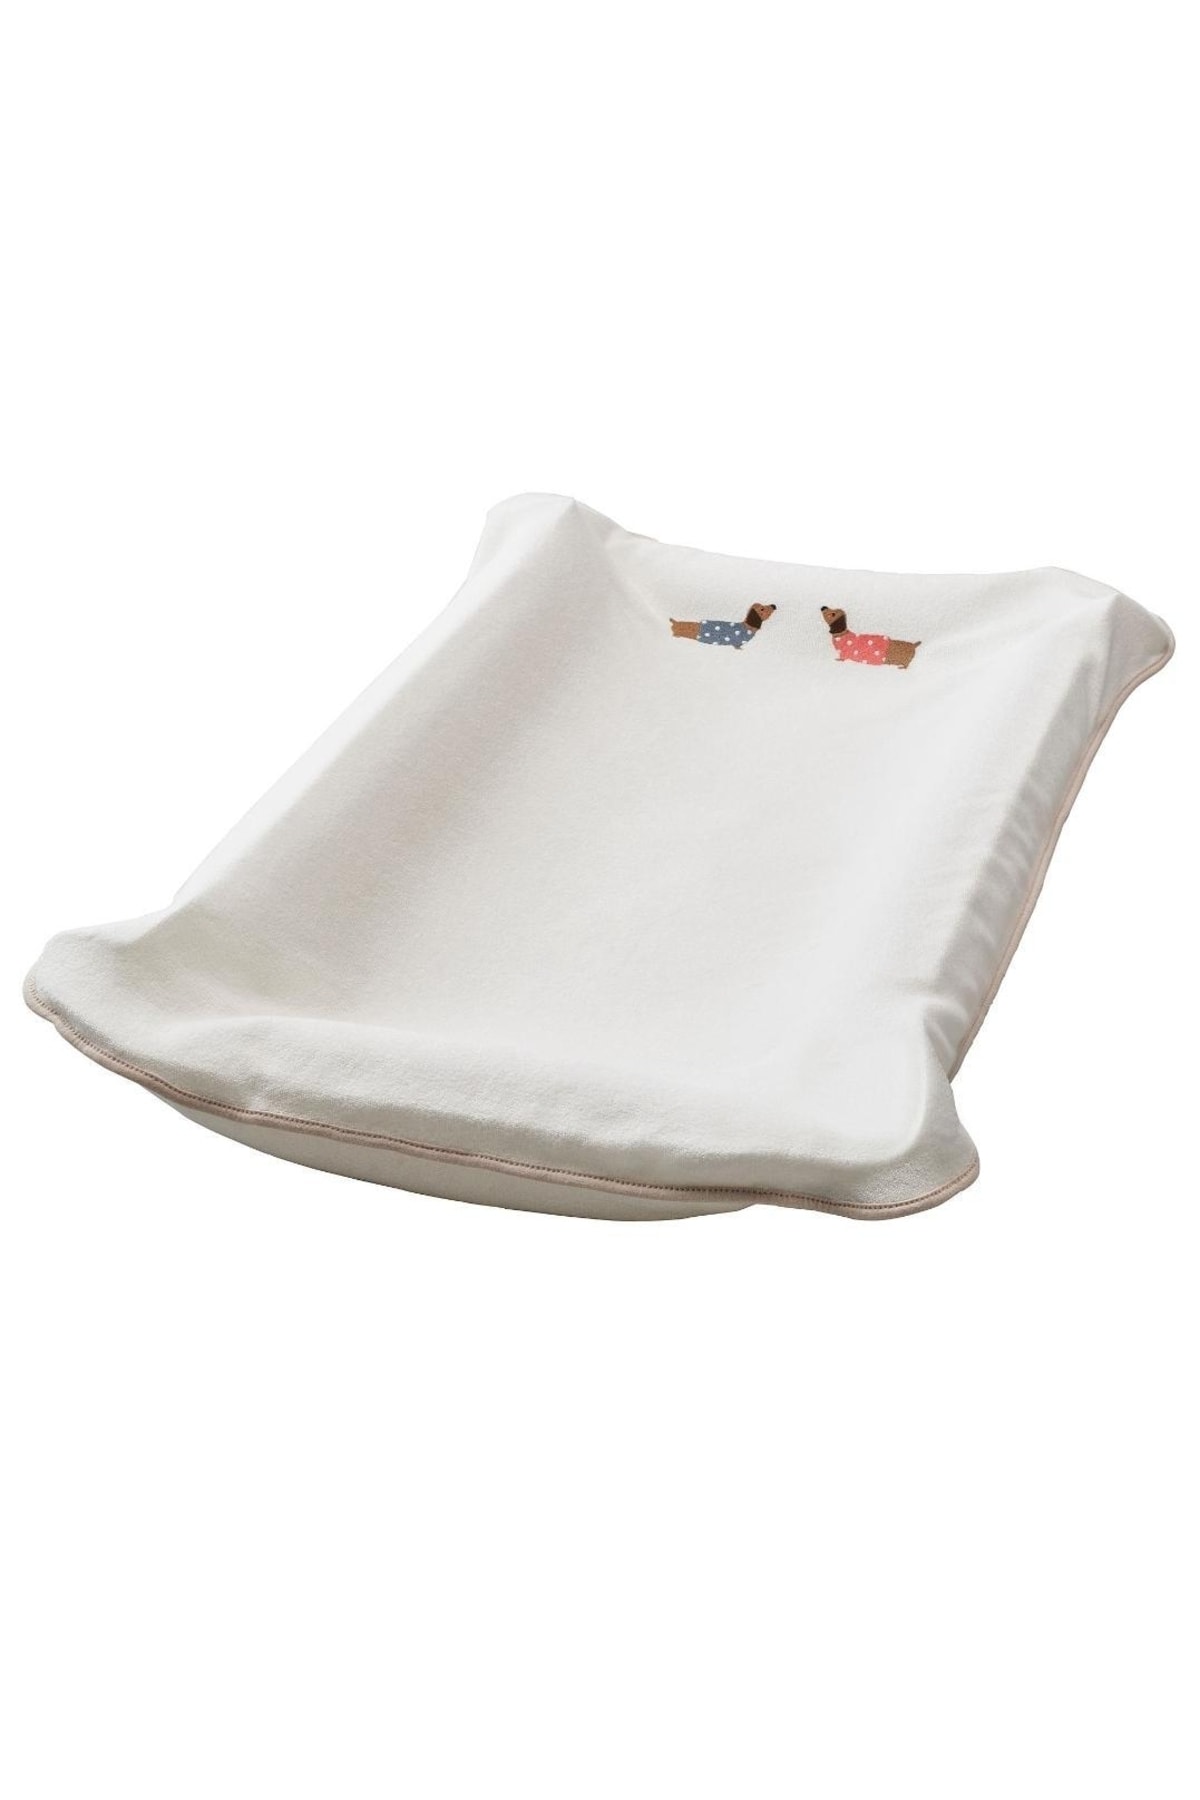 Doruk Bebek Alt Değiştirme Pedi Kılıfı, Beyaz-desenli, 55x83 cm